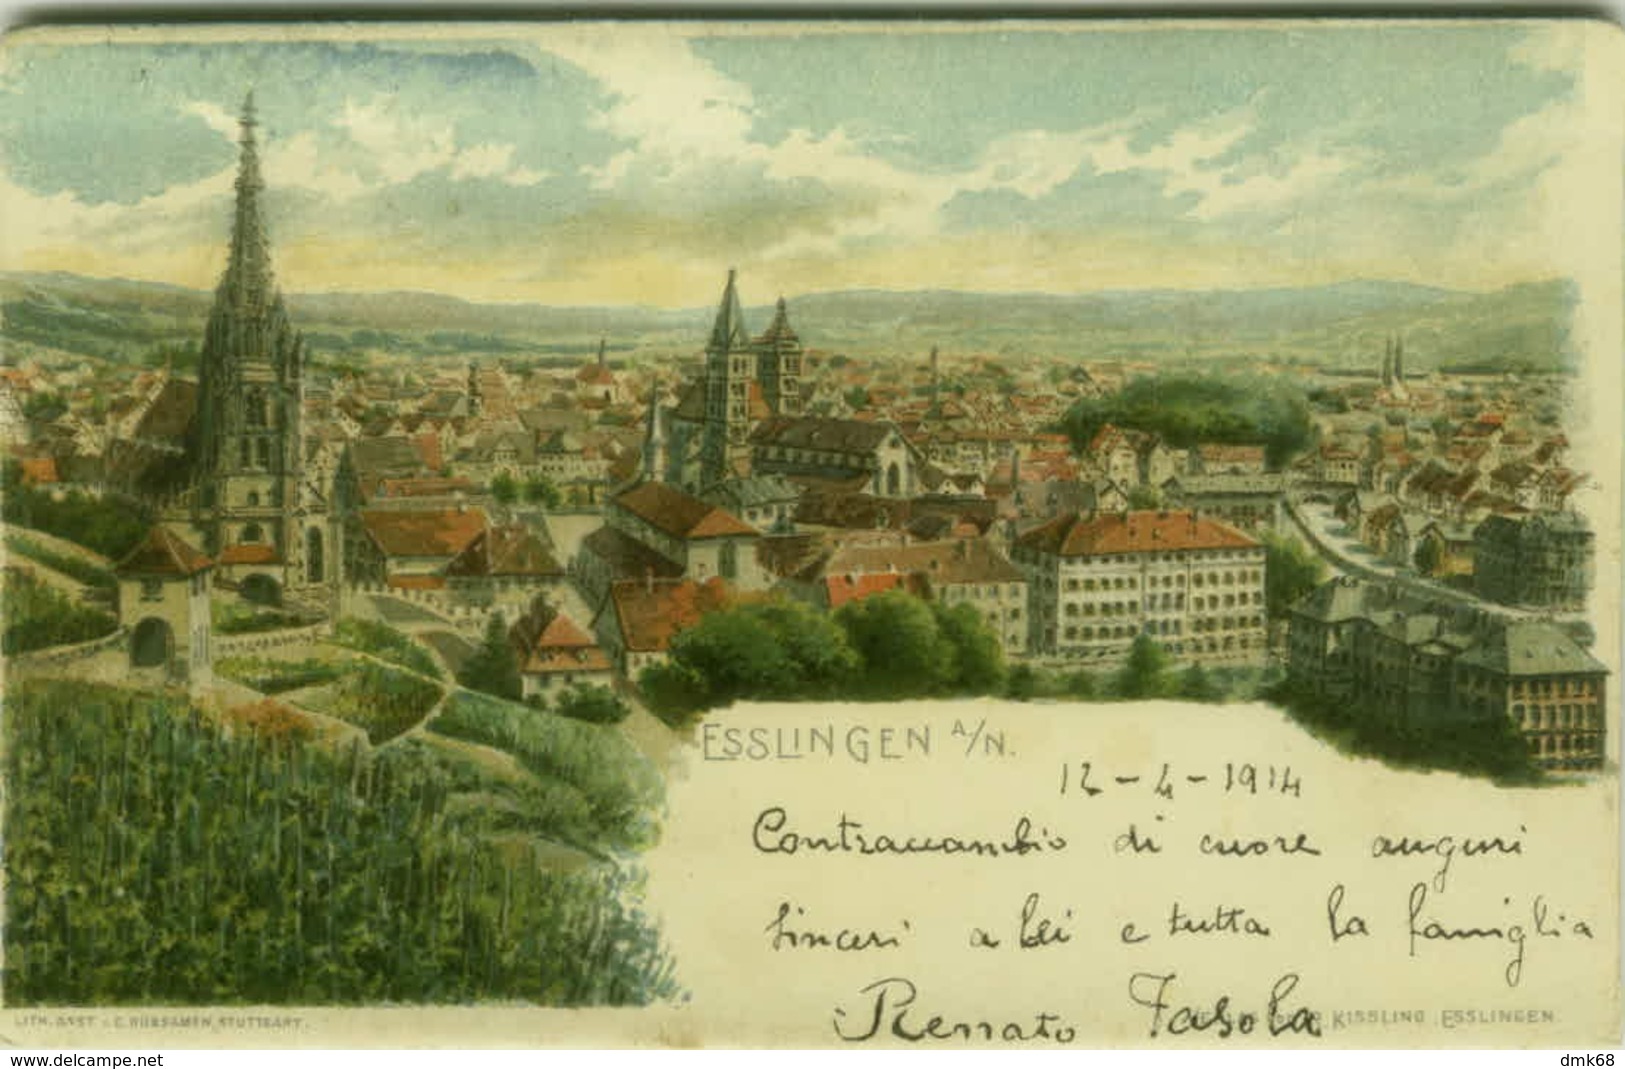 AK GERMANY - ESSLINGER A/N - LITH. C. RUBSAMEN - 1900s (BG4163) - Eislingen